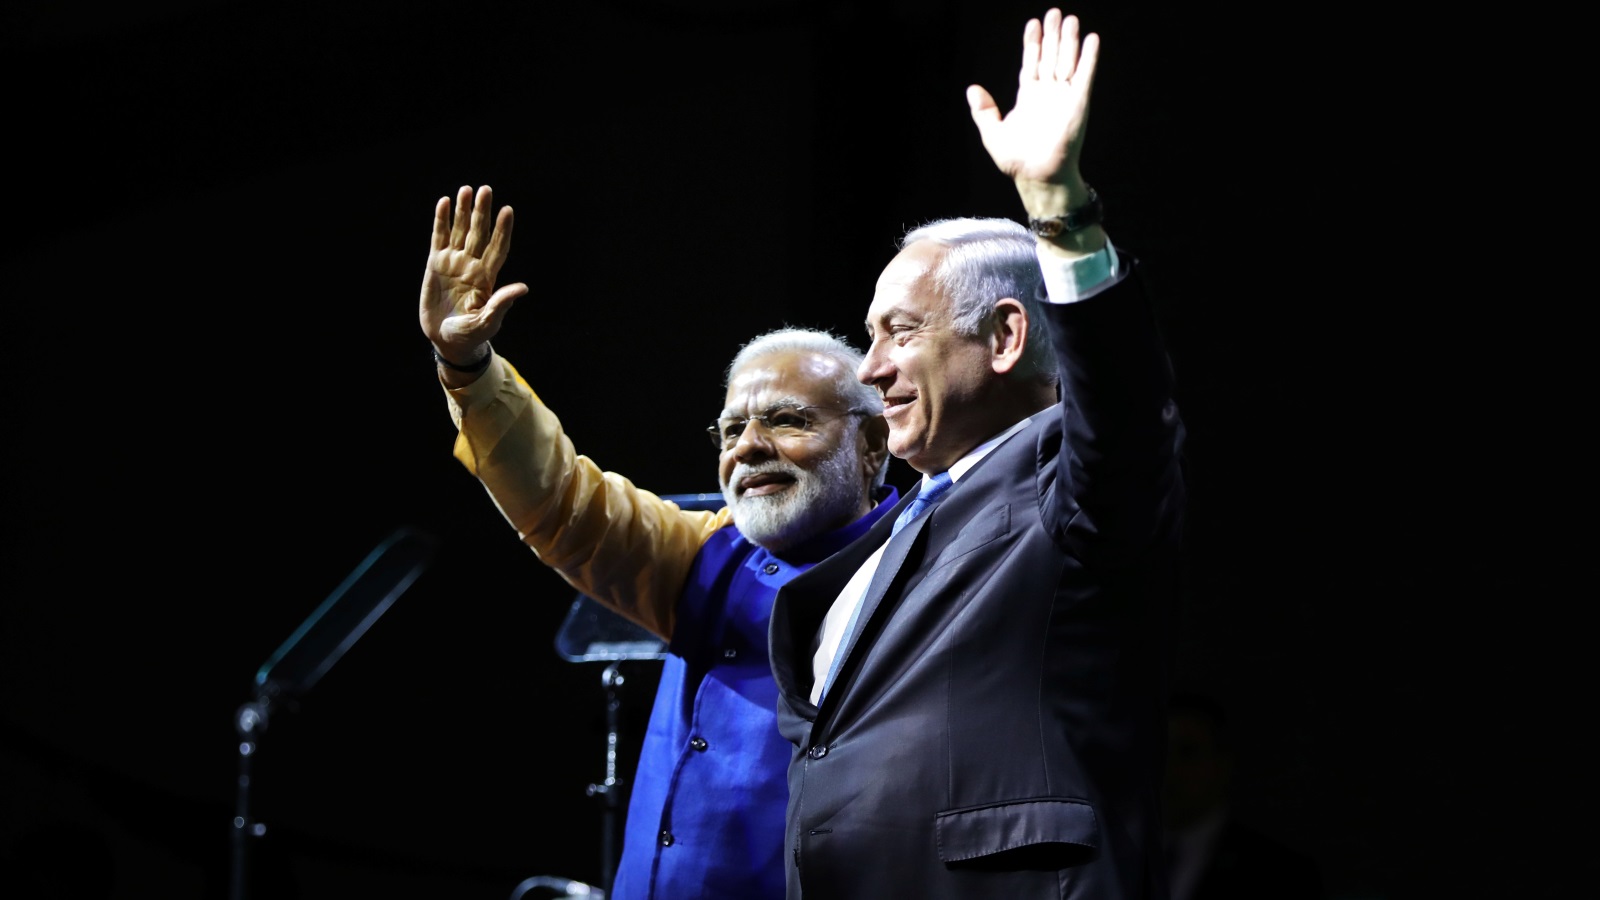 زار رئيس الوزراء الهندي ناريندرا مودي إسرائيل في 2017م ولم يزر رام الله، مقر السلطة الفلسطينية والمحطة المعتادة للزعماء الزائرين هناك، وكانت لها دلالة قوية.